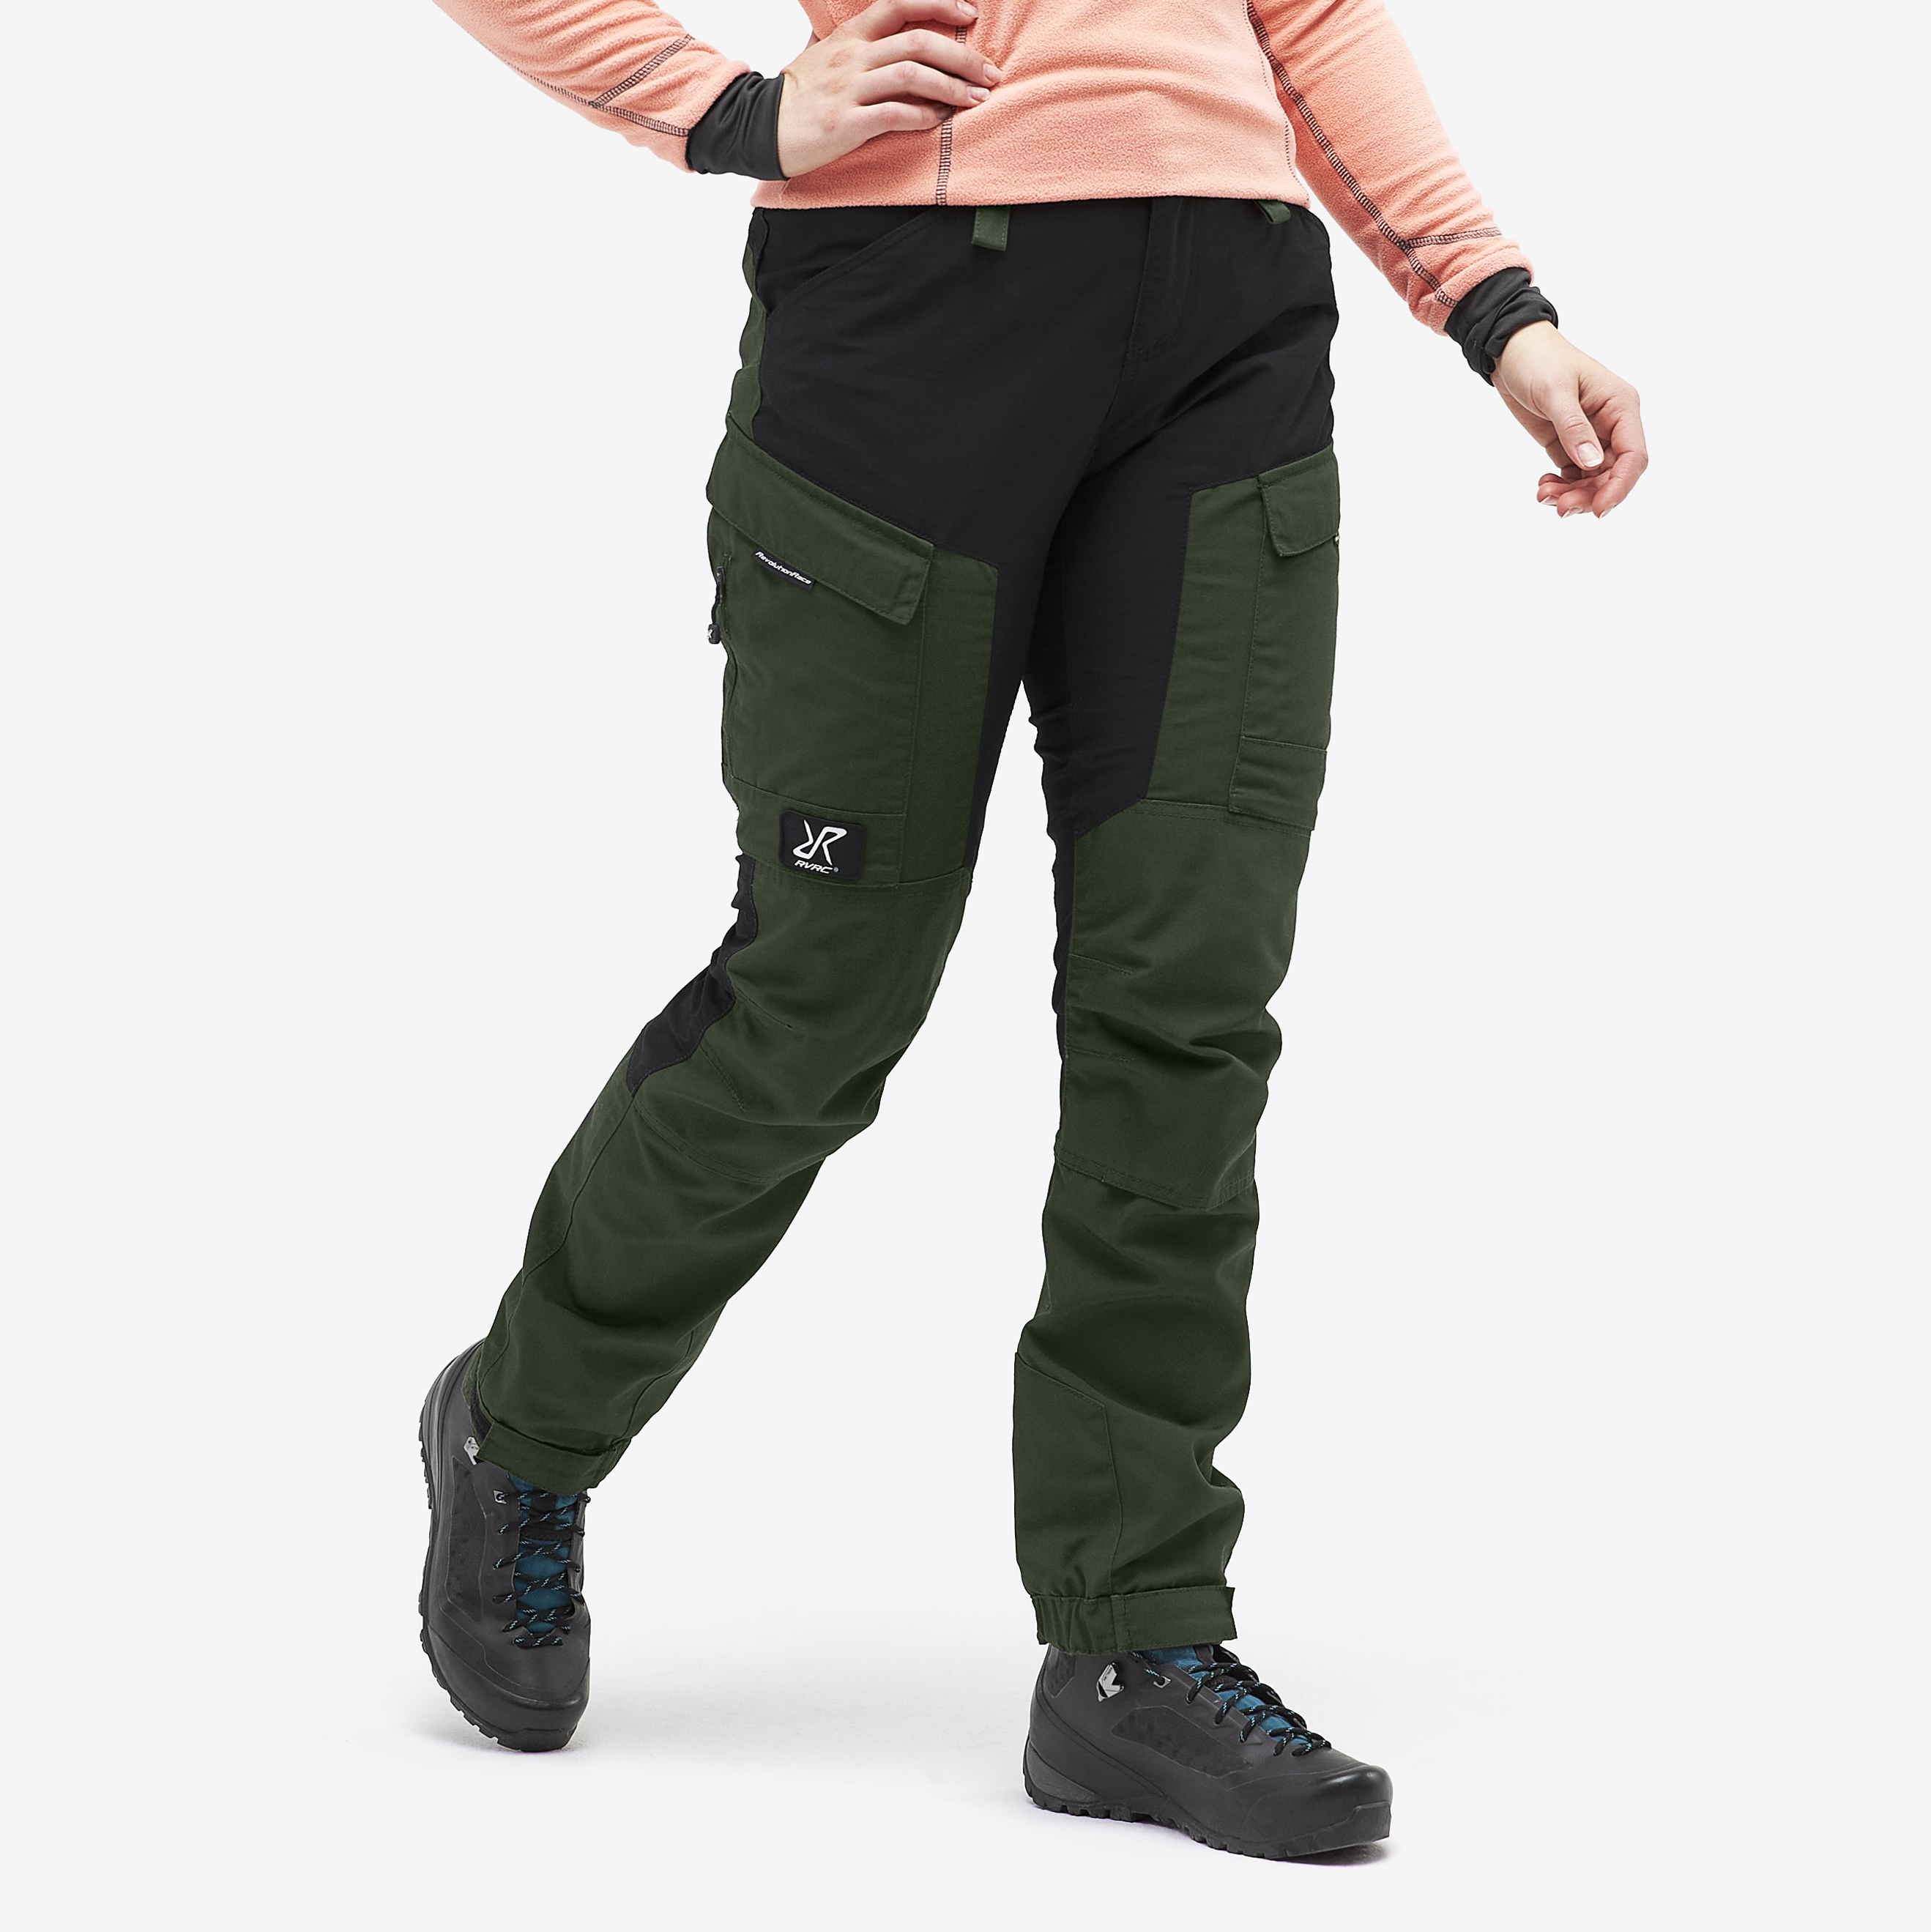 RVRC GP Short spodnie outdoorowe damskie zielony